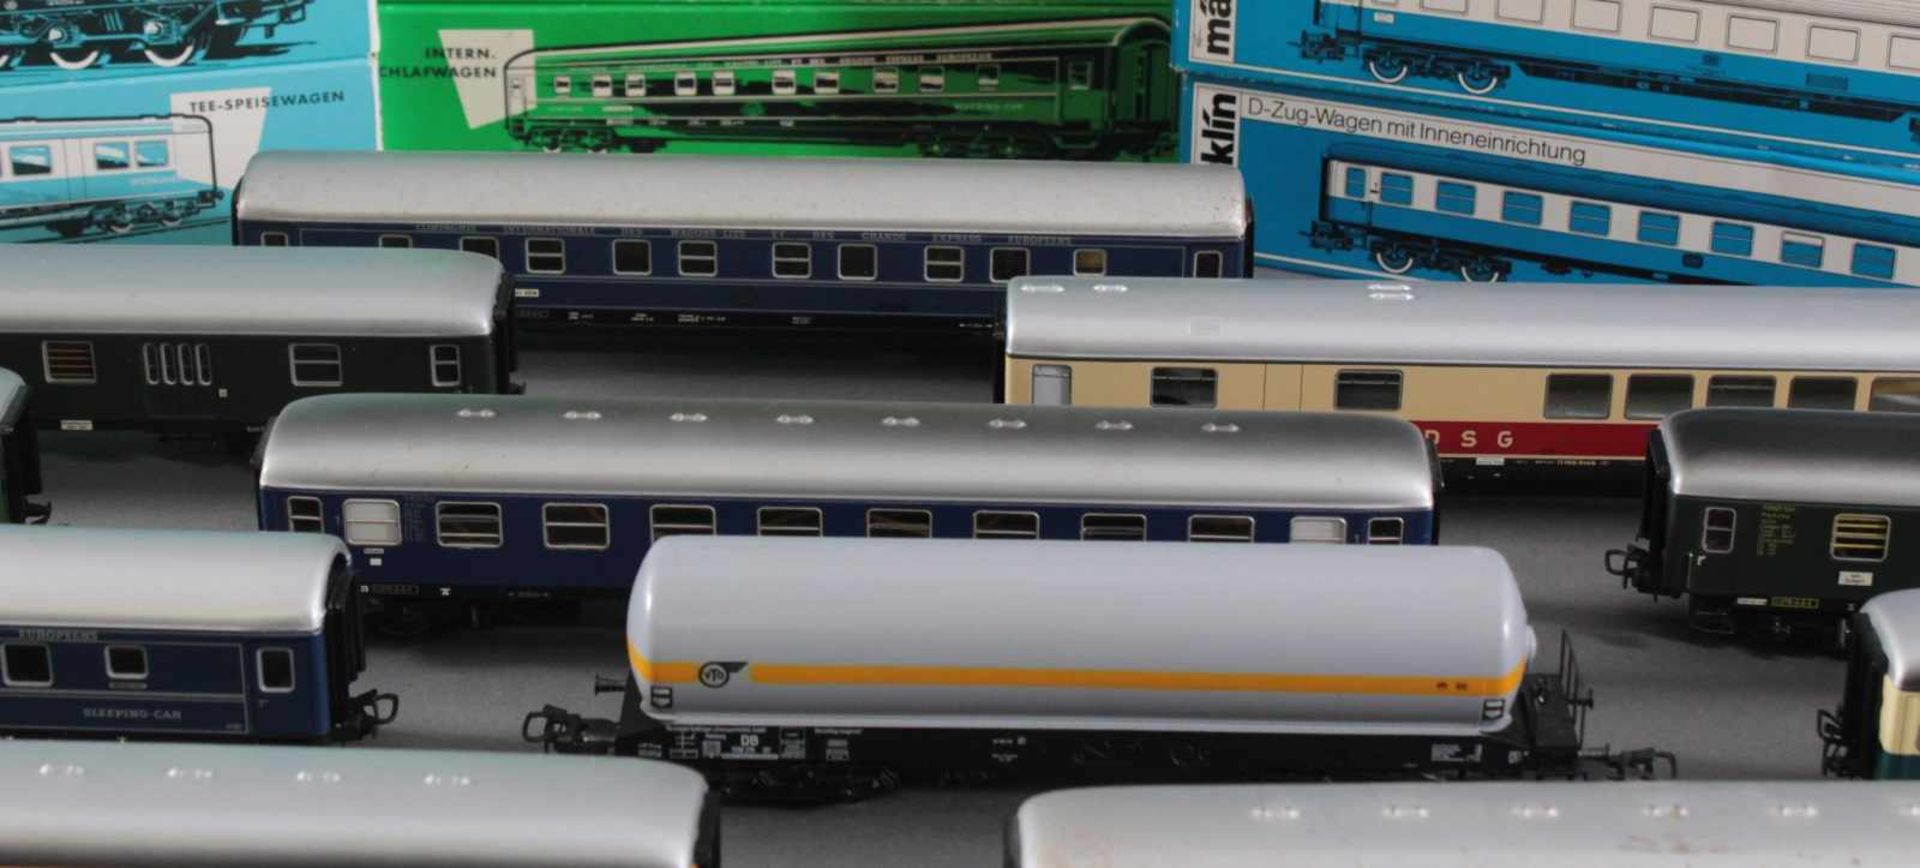 14 Märklin Güterwaggons in der Originalverpackung Spur H0Modellnummer 4044, 4064, 4052, 4617, - Bild 4 aus 4